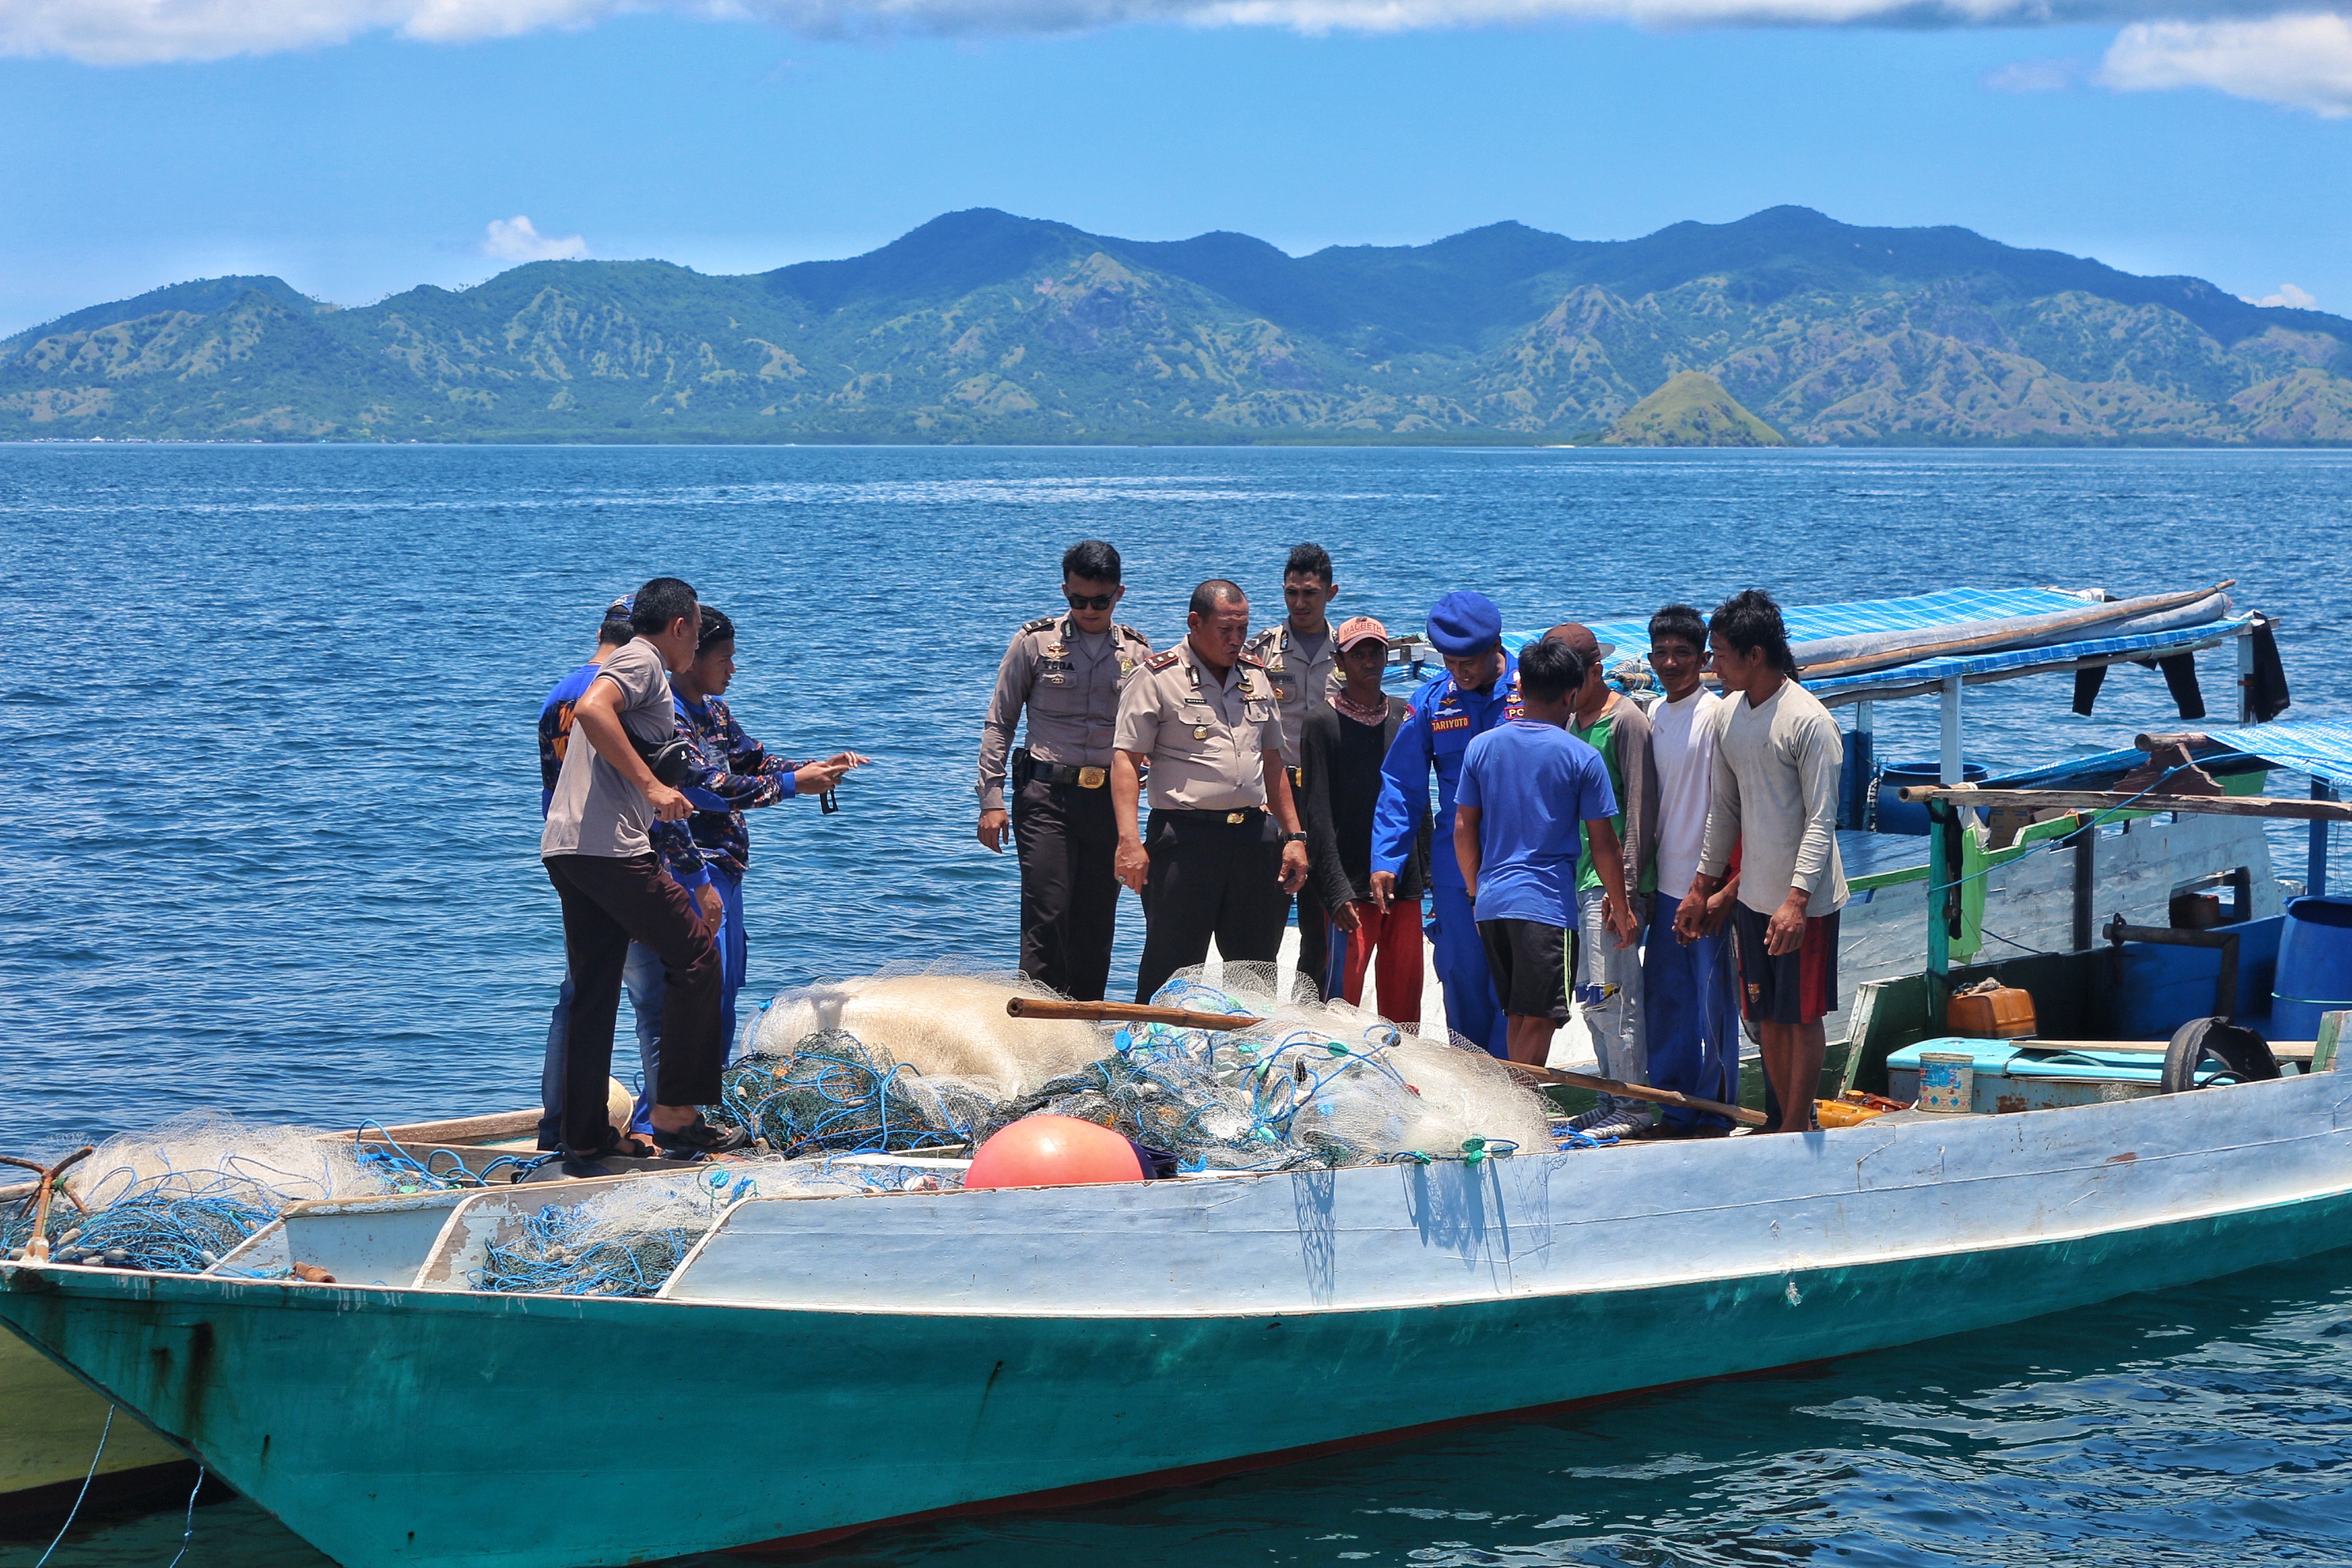 Wakapolres Mabar Pimpin Giat Patroli Perairan Sekaligus Sambang Terhadap Masyarakat Pesisir Pulau